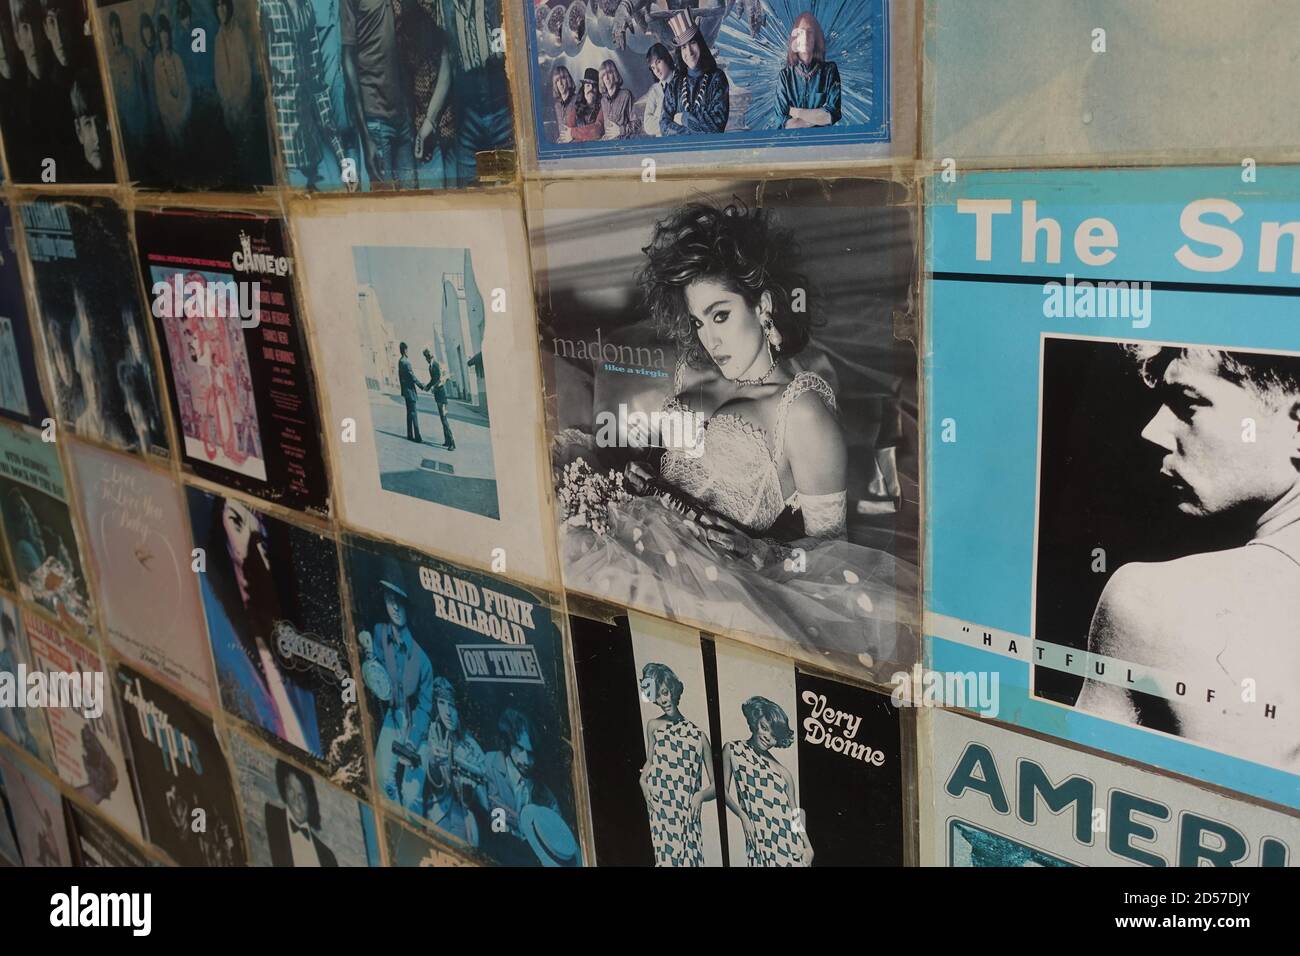 Athènes, Grèce - 7 août 2019 : mur avec albums de disques vinyles de musique pop rock vintage des années 1970 et 1980. Banque D'Images